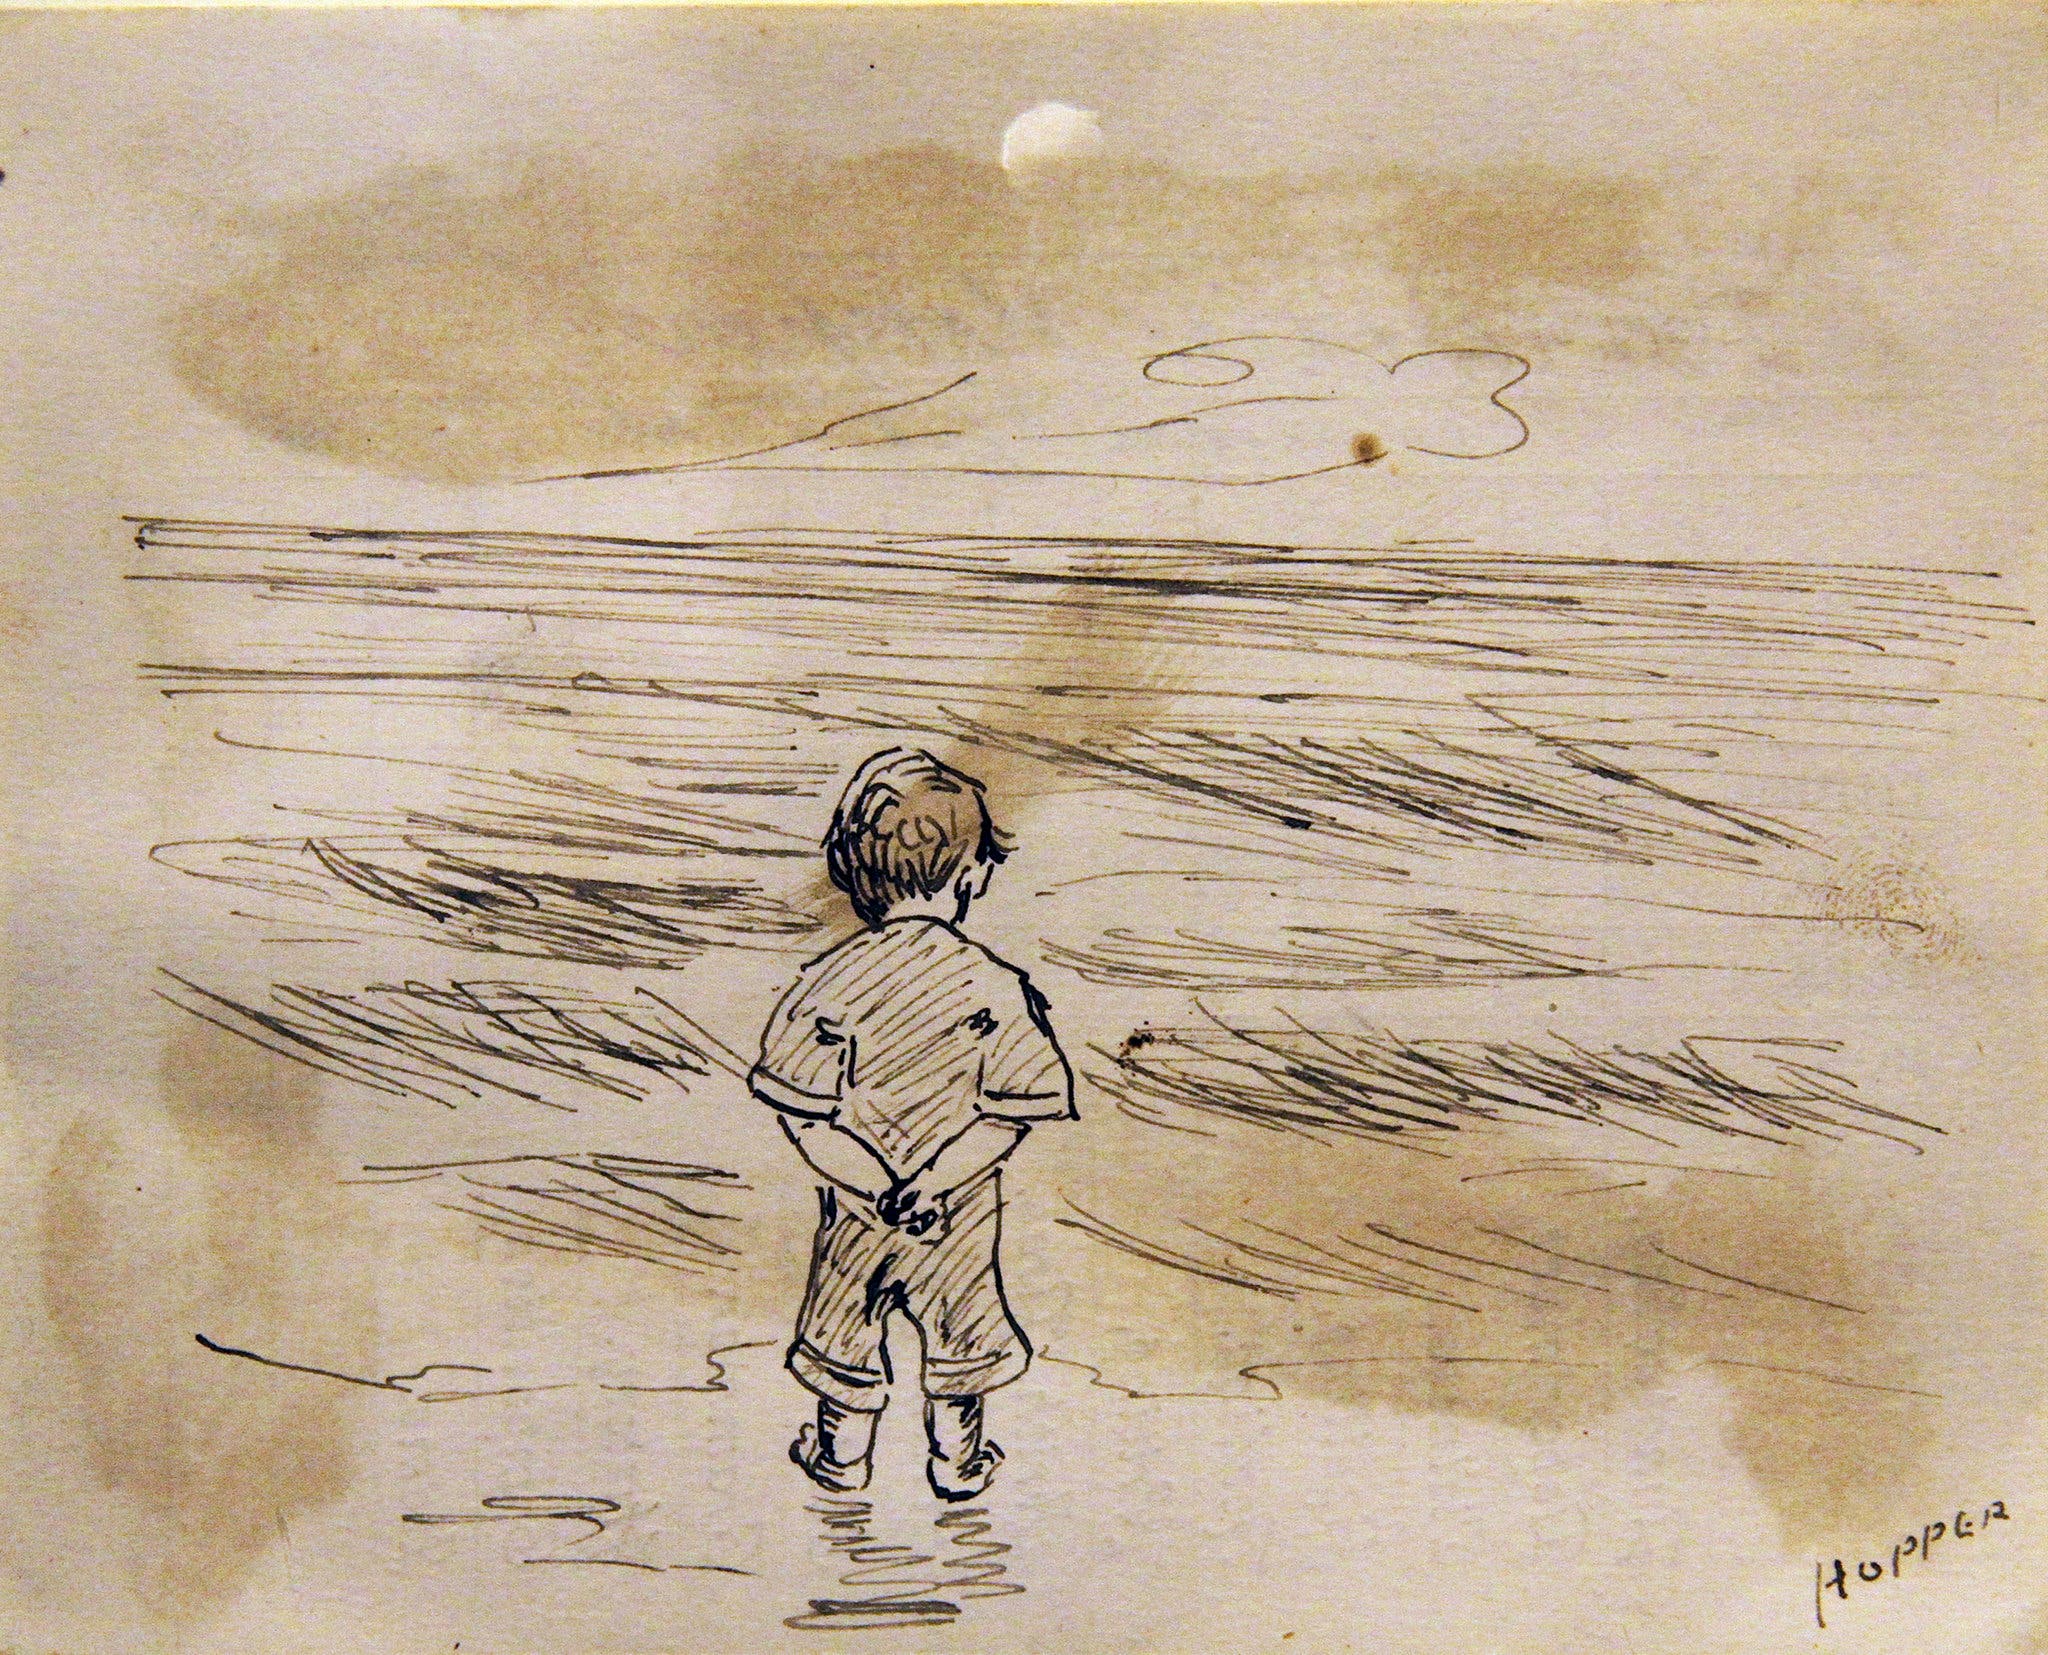 望海的小男孩 by 爱德华 霍珀 - 1891 - 11.43 x 8.89 cm 